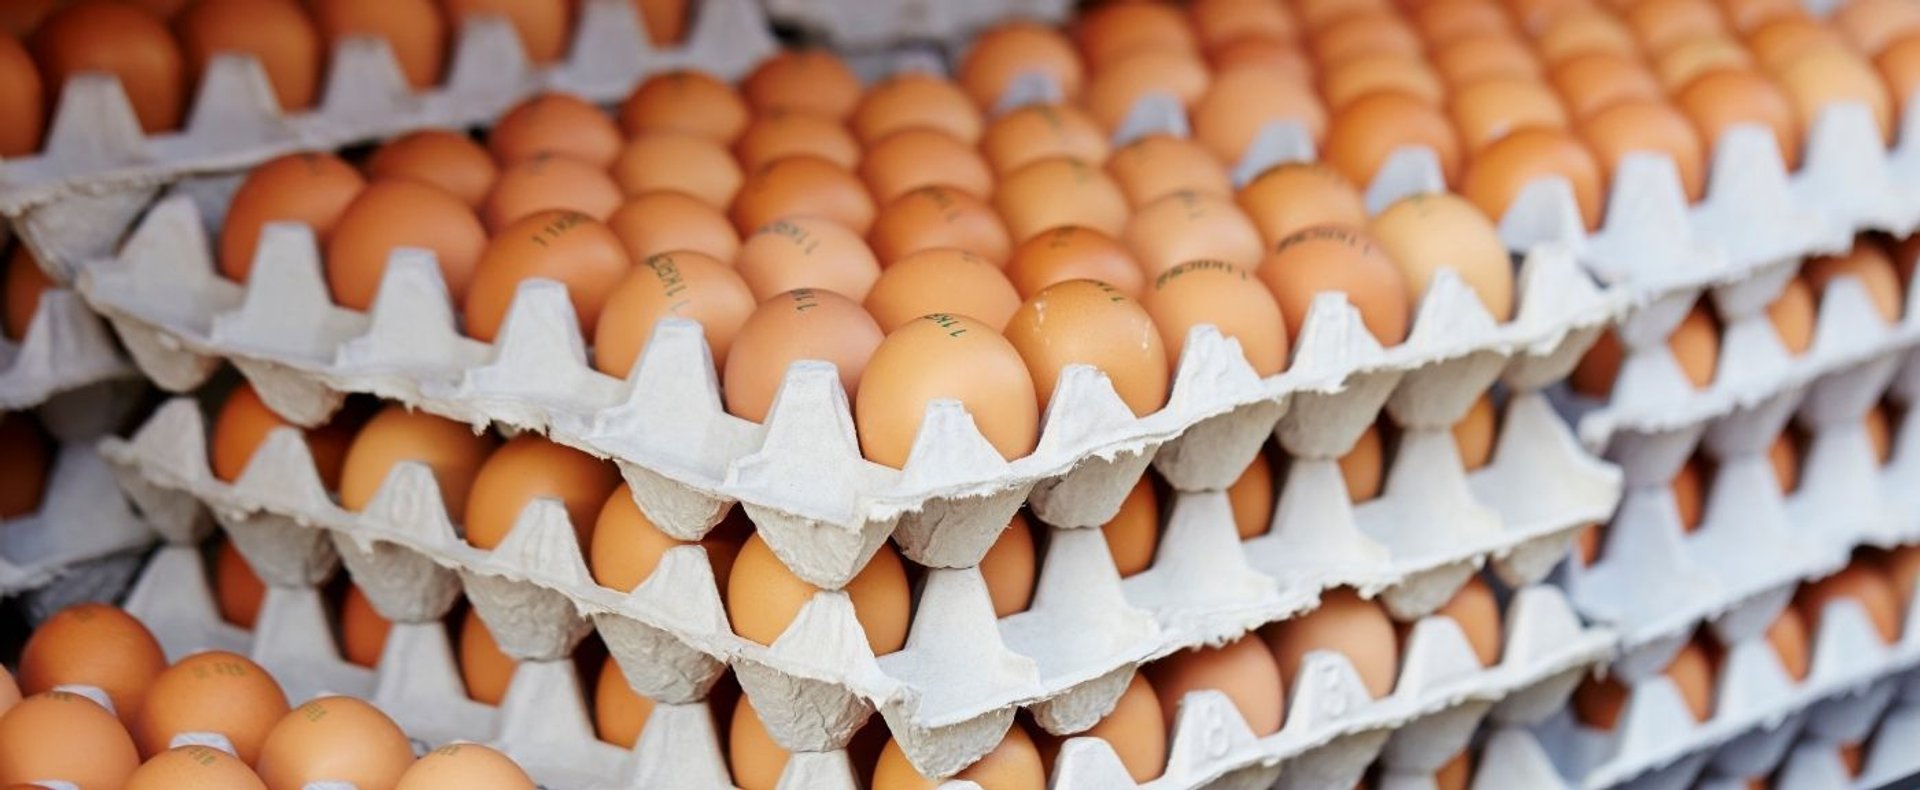 Jajka z chowu klatkowego znikają ze sklepów